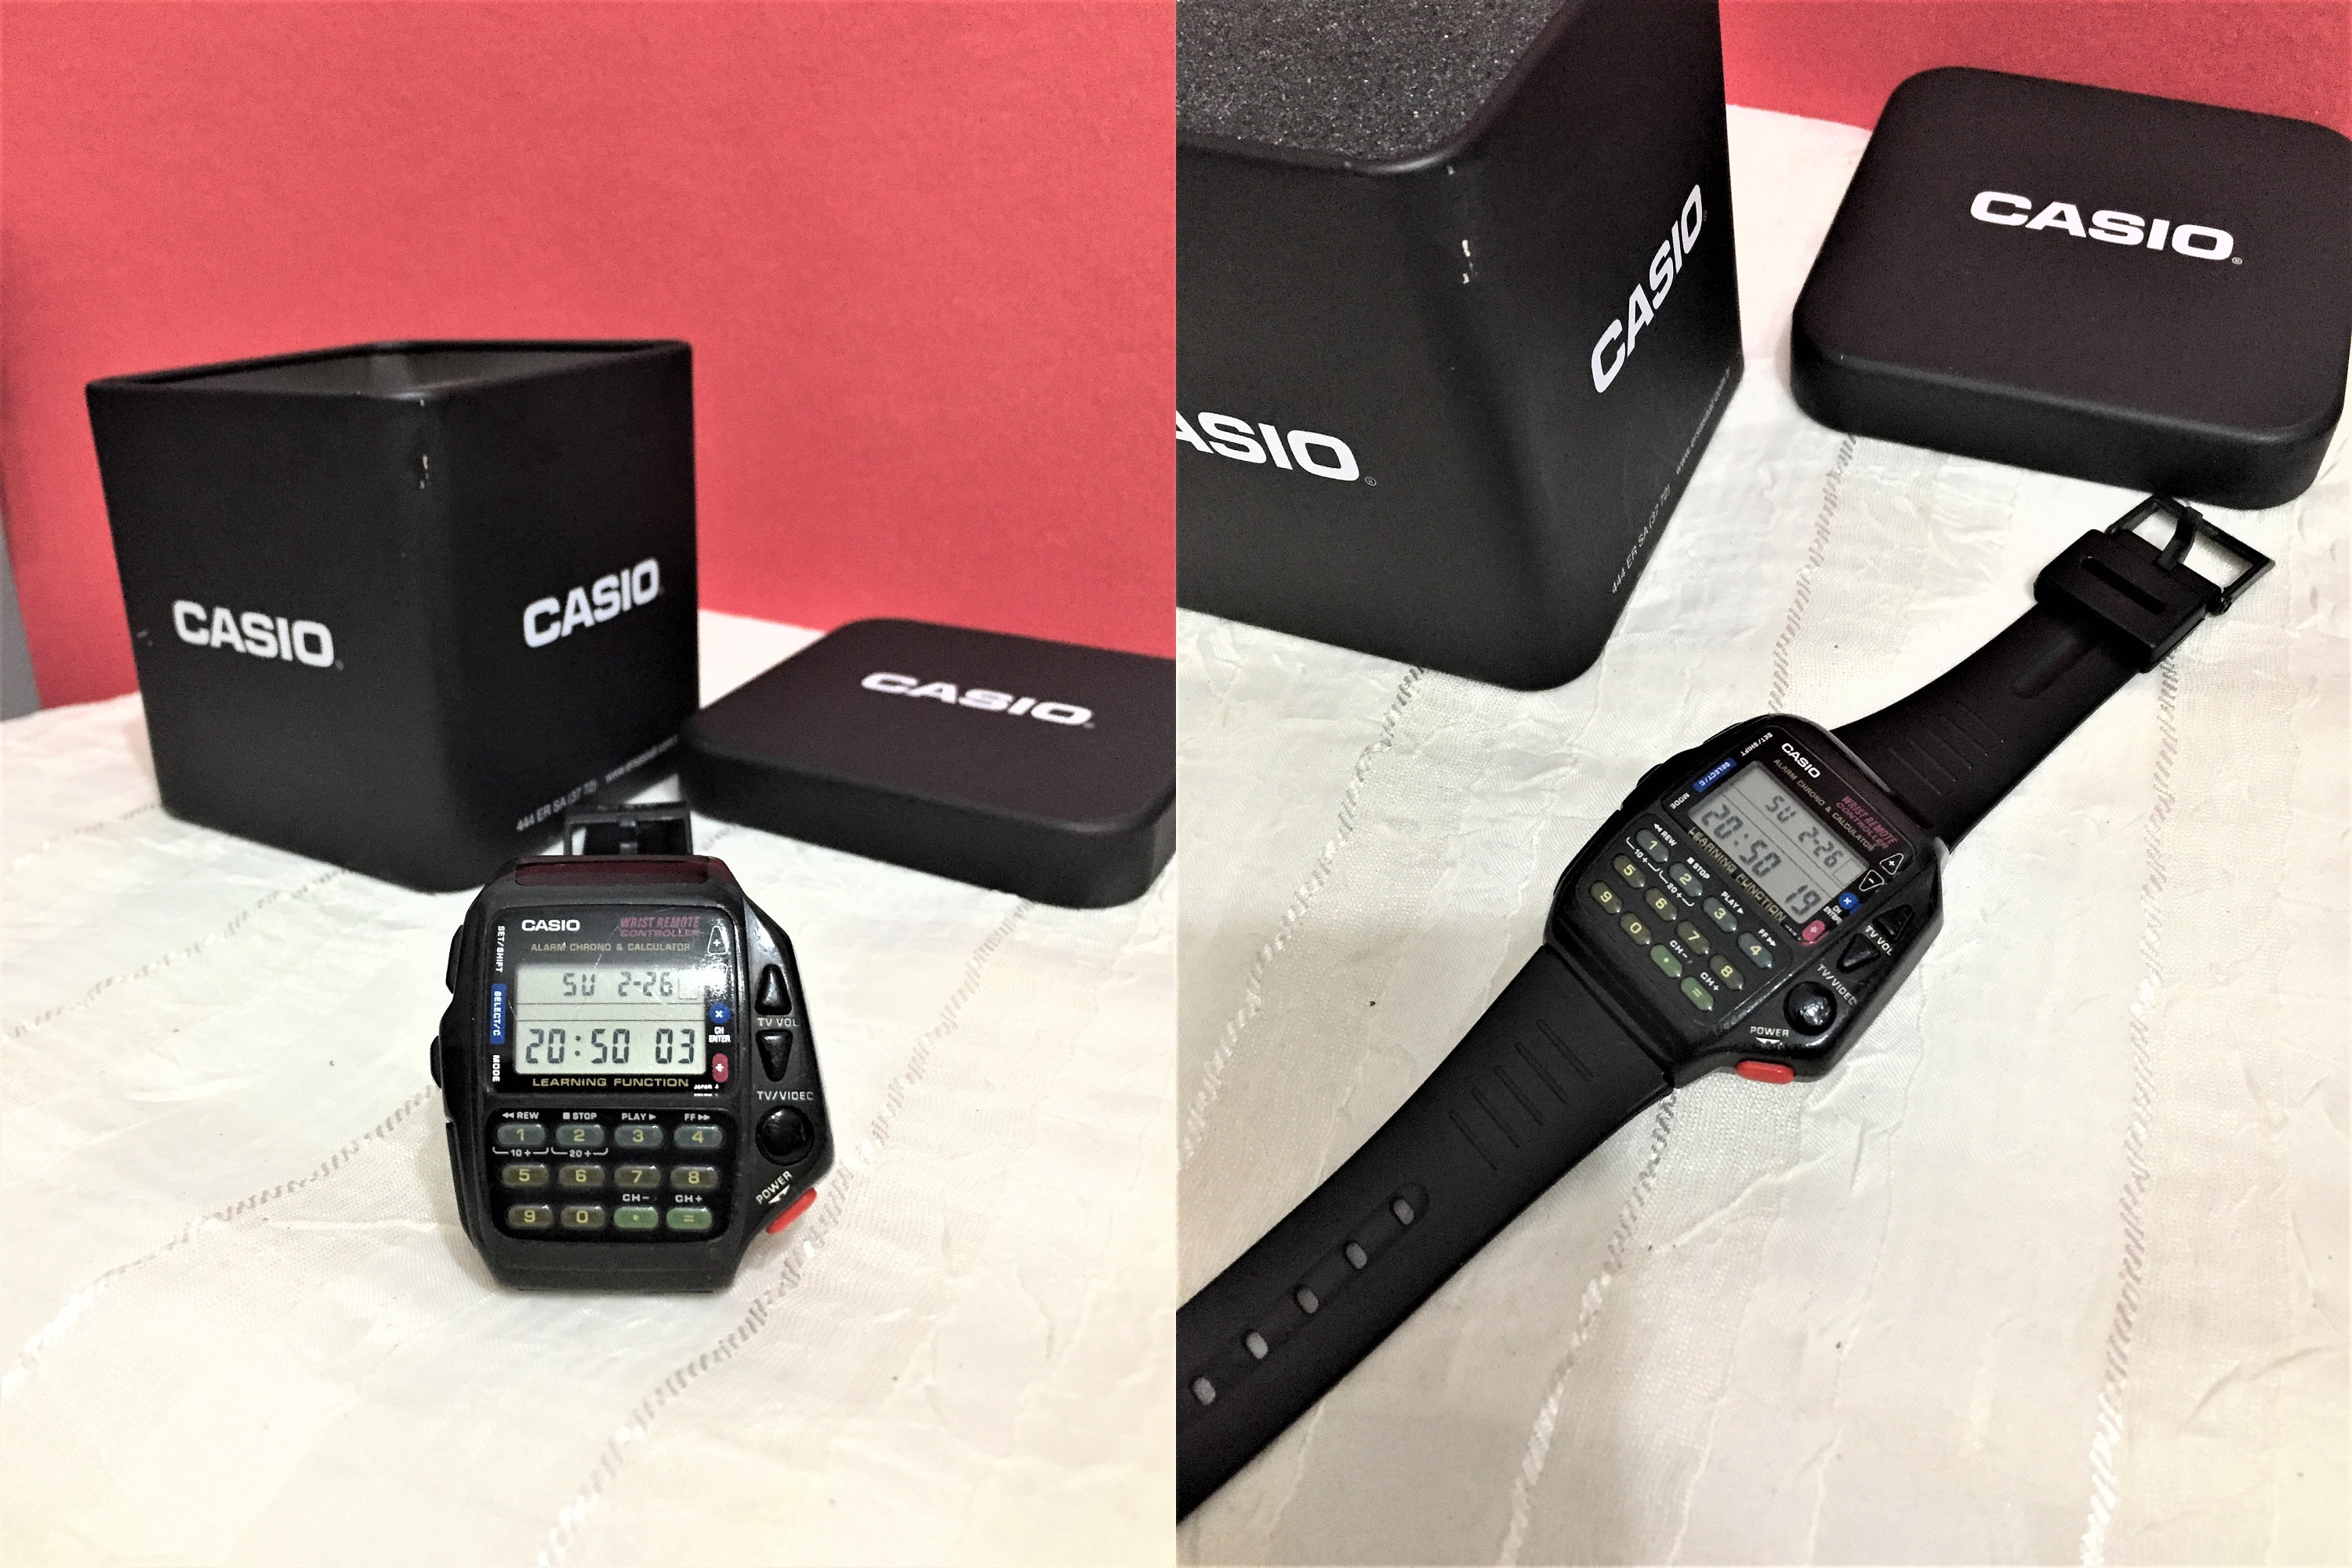 reloj digital casio calculadora ldf40 ldf-40 fu - Compra venta en  todocoleccion